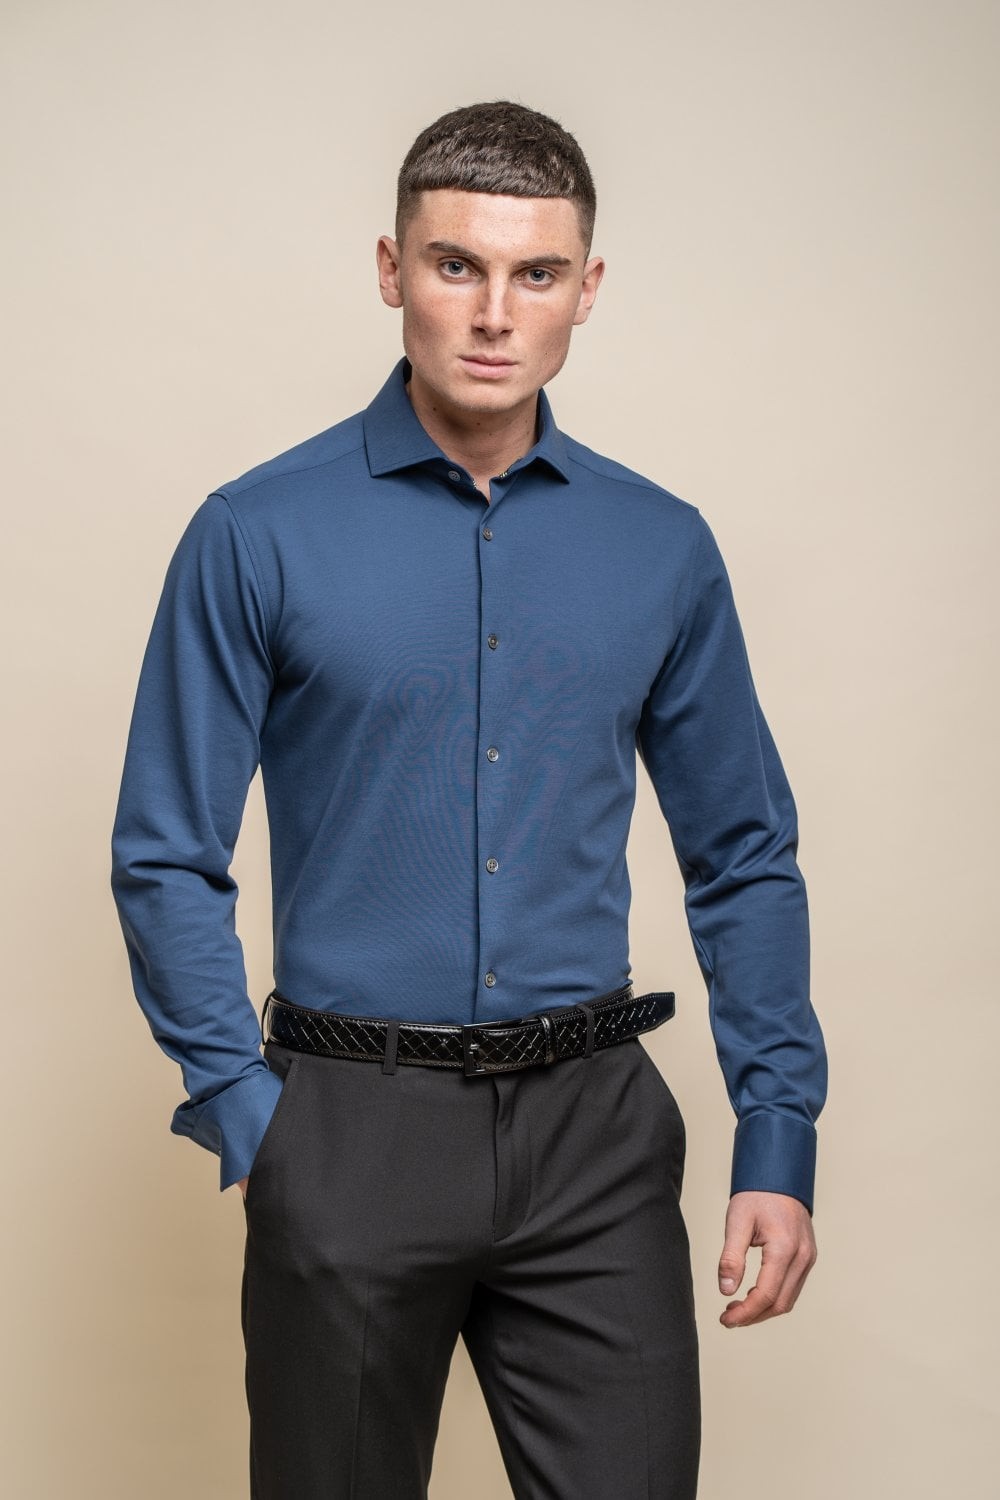 Chemise ajustée en coton à manches longues pour hommes - ASHLEY - Bleu